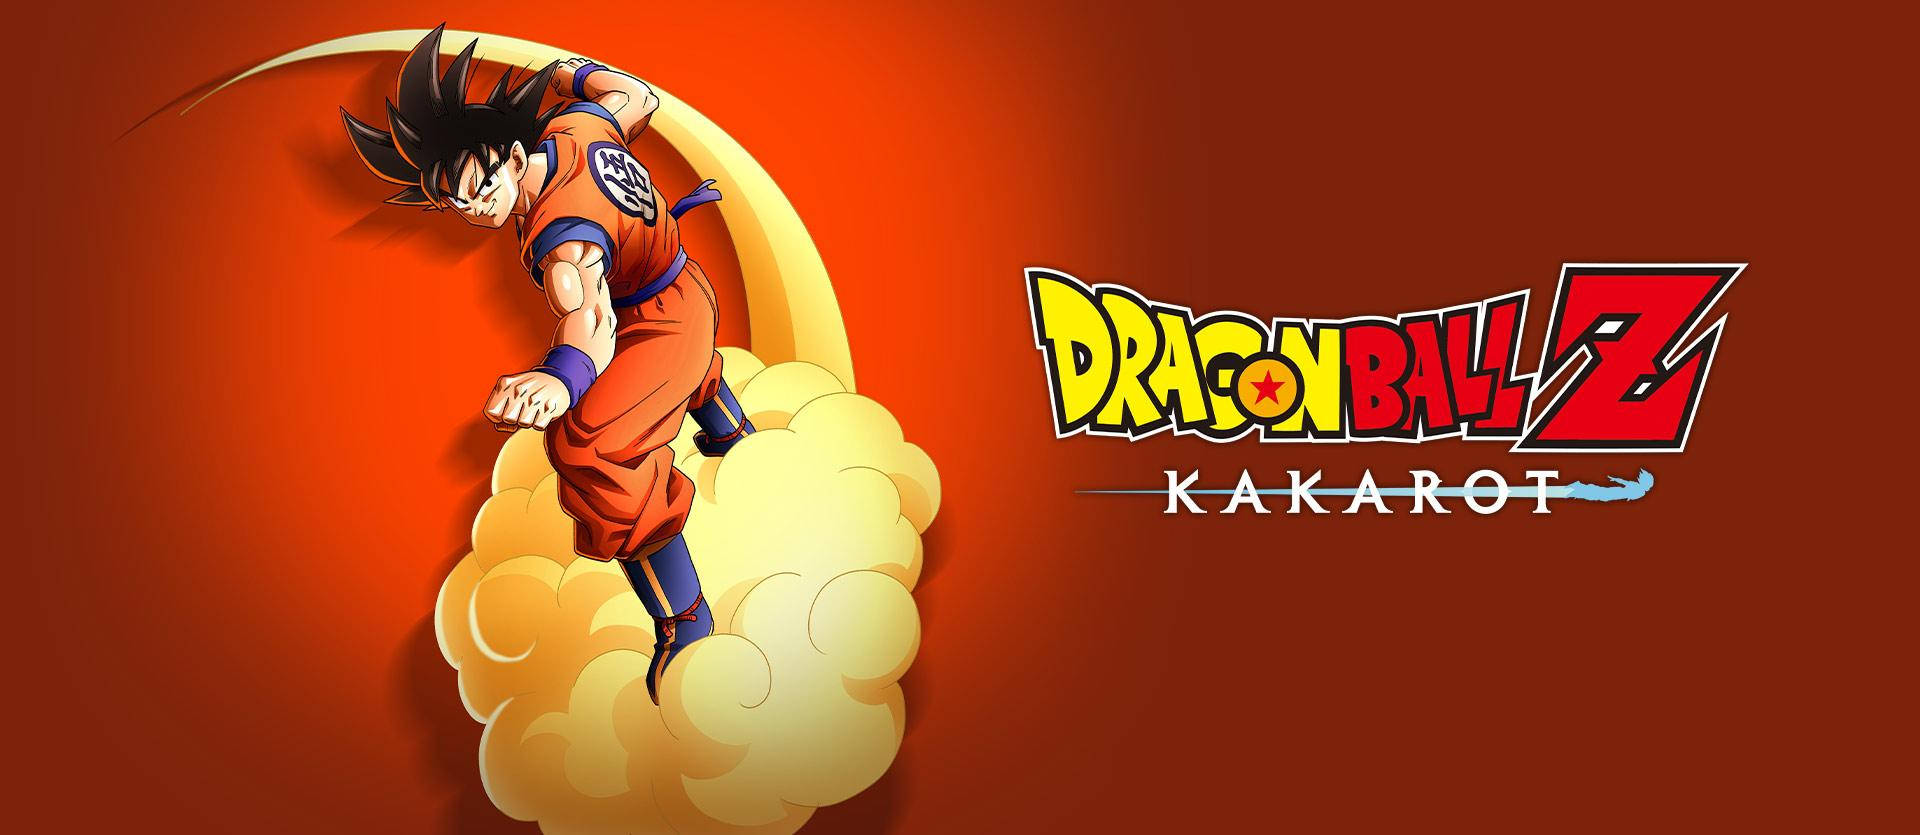 Dbz Logo With Goku Image Wallpaper